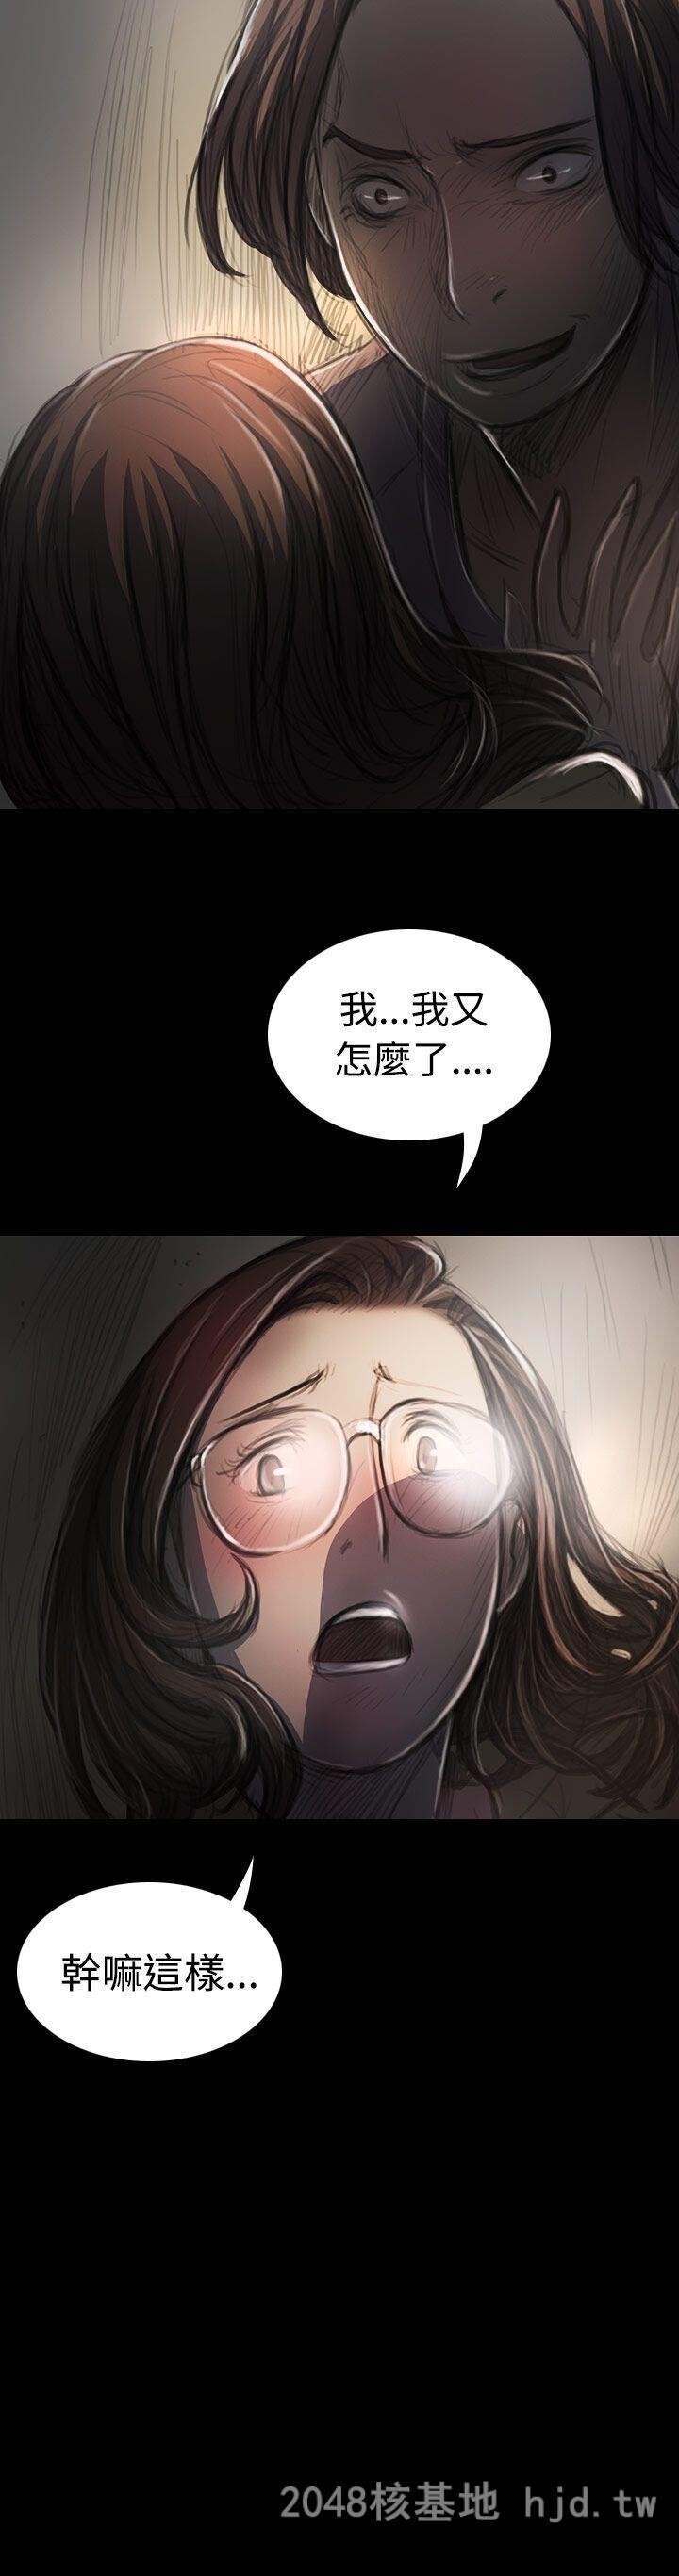 [中文]姐姐-莲27-28第0页 作者:Publisher 帖子ID:257769 TAG:动漫图片,卡通漫畫,2048核基地